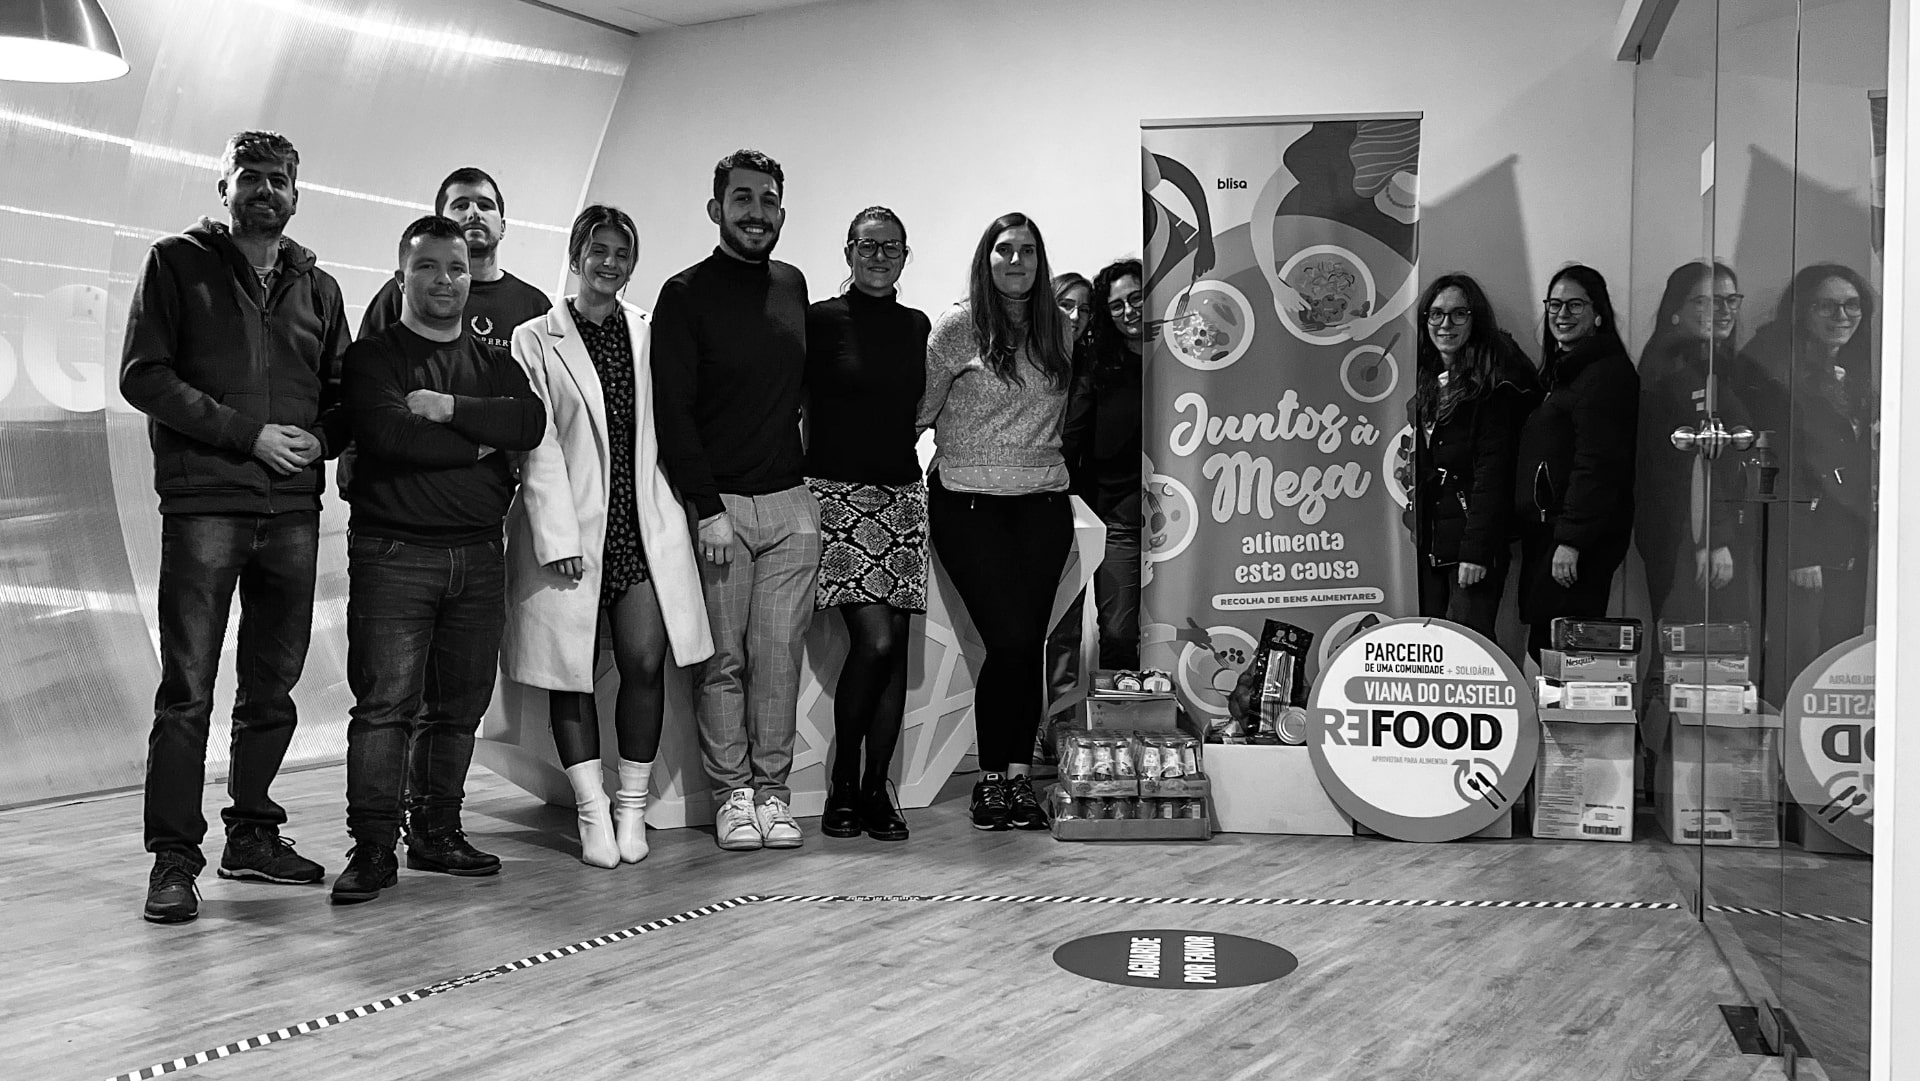 Campanha de recolha de bens alimentares: “Juntos à mesa” em parceria com a Refood Viana do Castelo